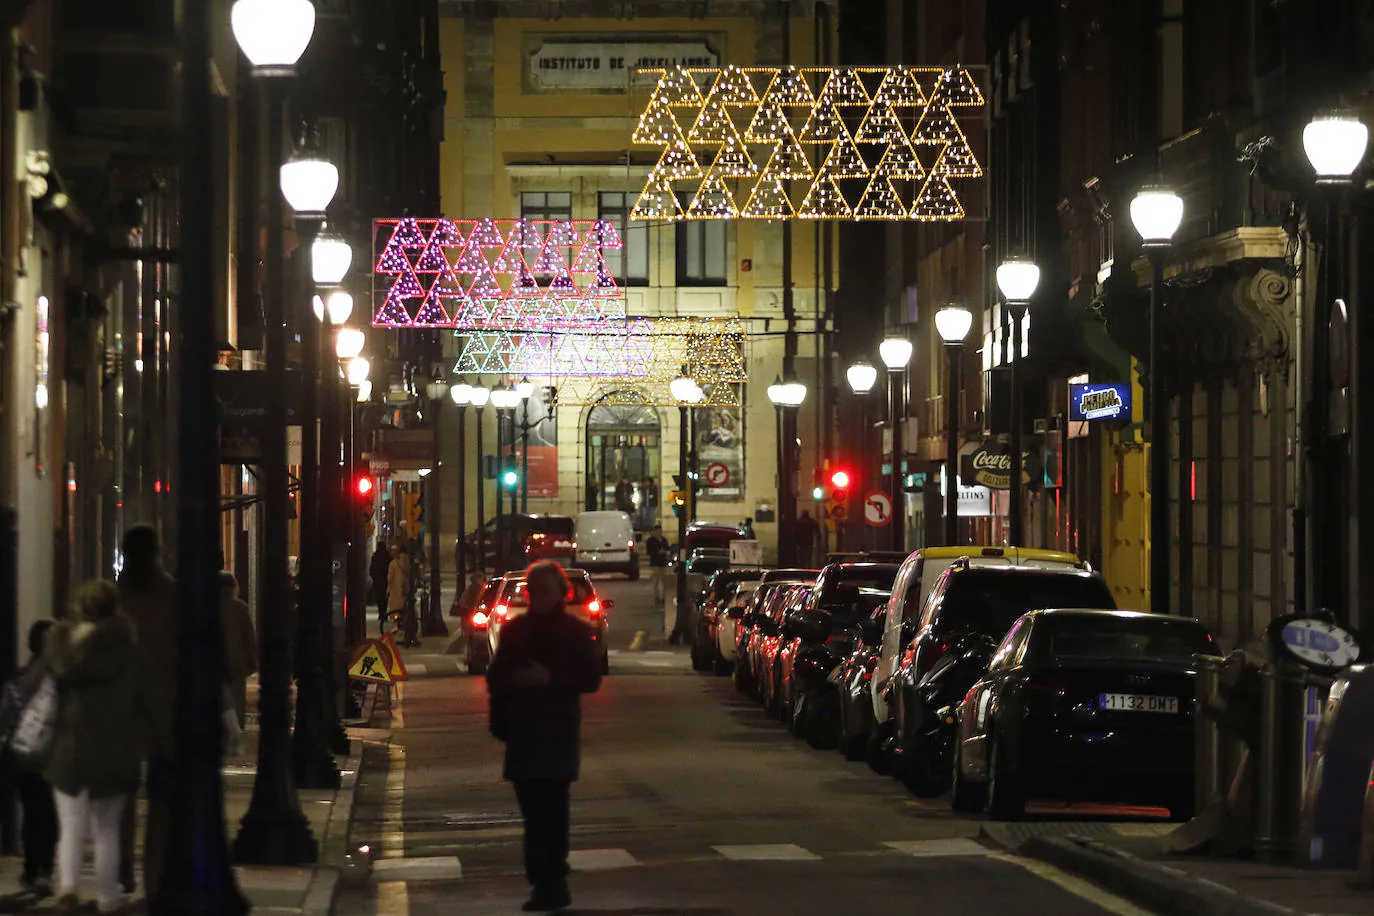 170 calles de la ciudad, cuarenta más que el año pasado, dan color a las fiestas navideñas.